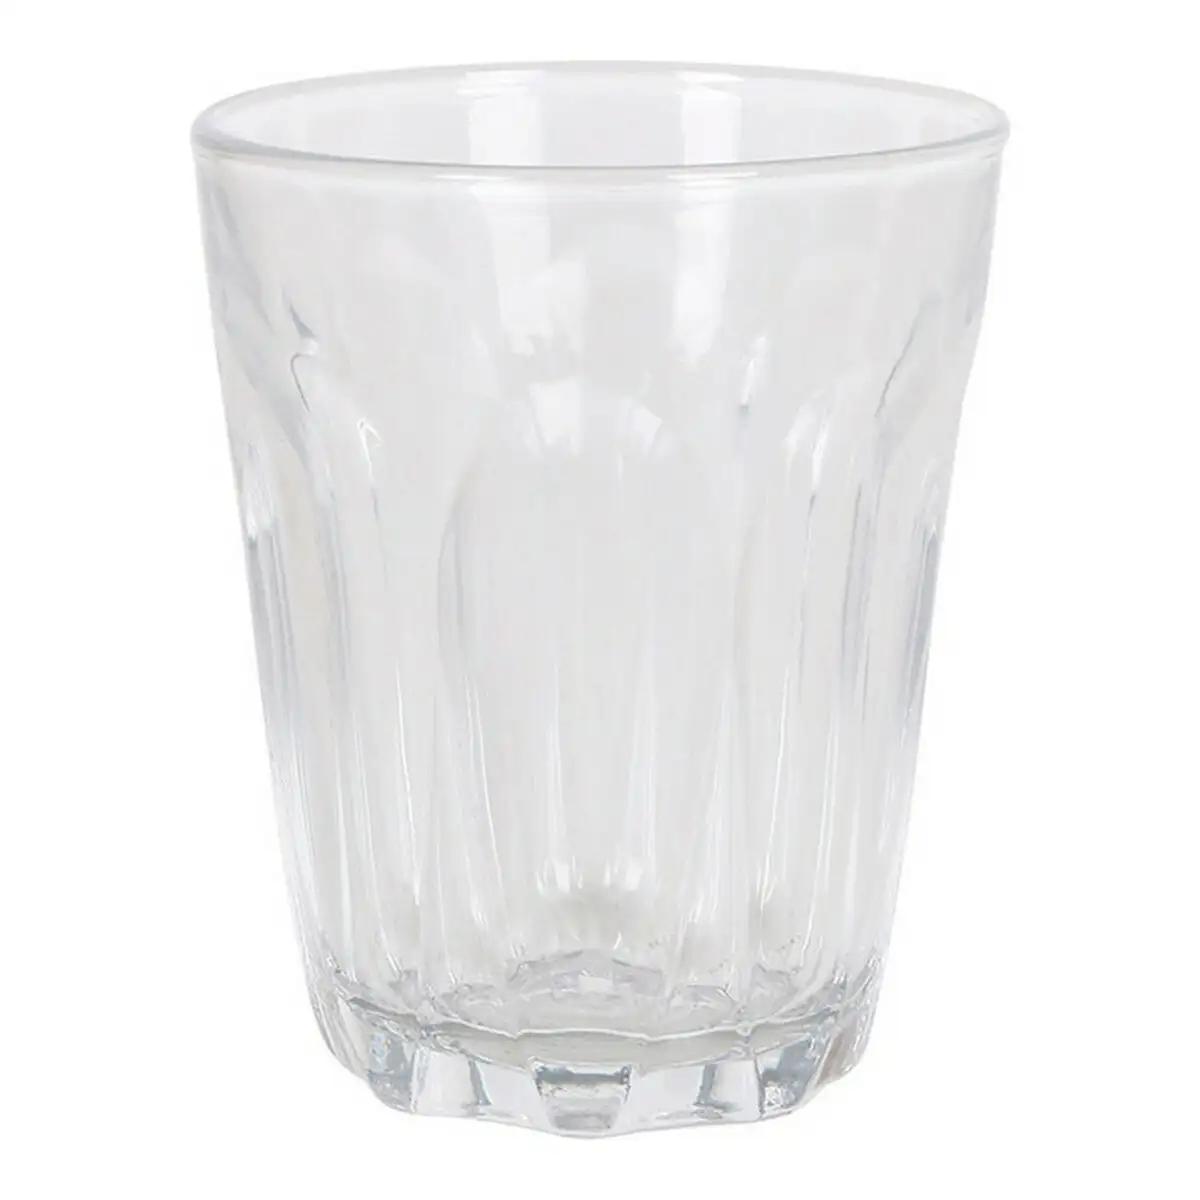 Set de verres duralex provence verre transparent 6 pcs _5950. DIAYTAR SENEGAL - Où Choisir Devient un Plaisir. Découvrez notre boutique en ligne et choisissez parmi une variété de produits qui satisferont tous vos besoins.